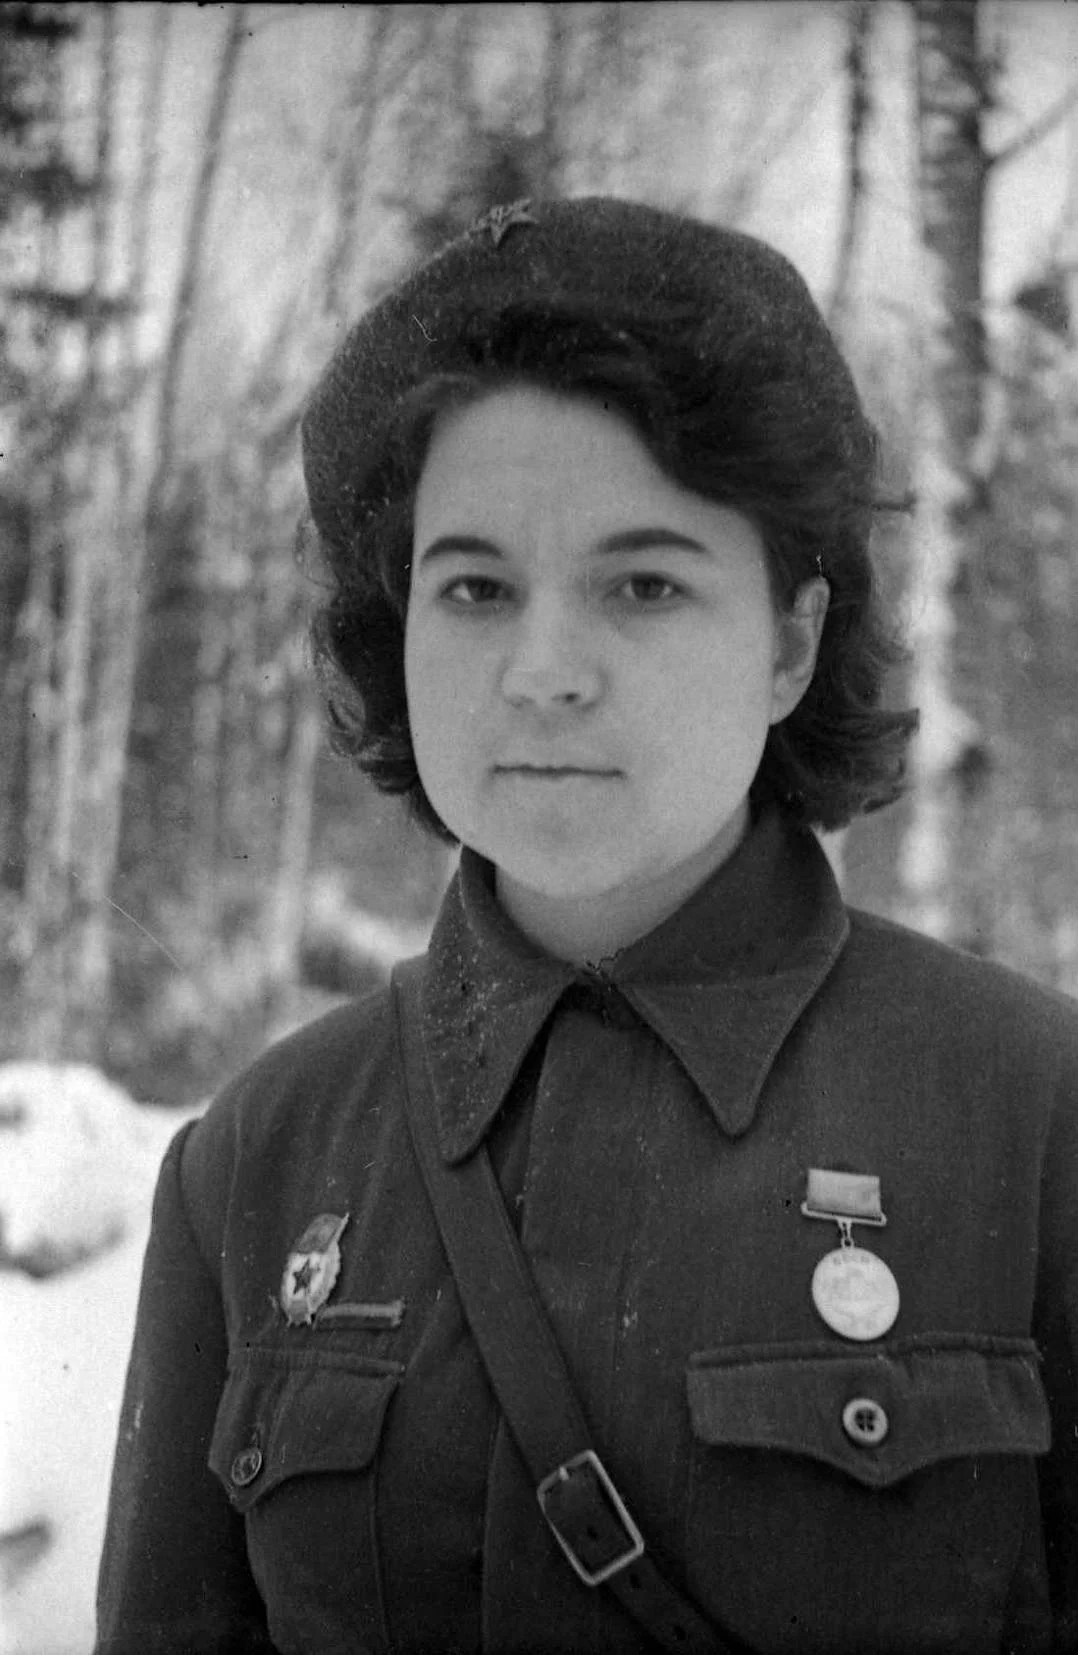 История за кадром: Валя Панфилова — дочь и солдат